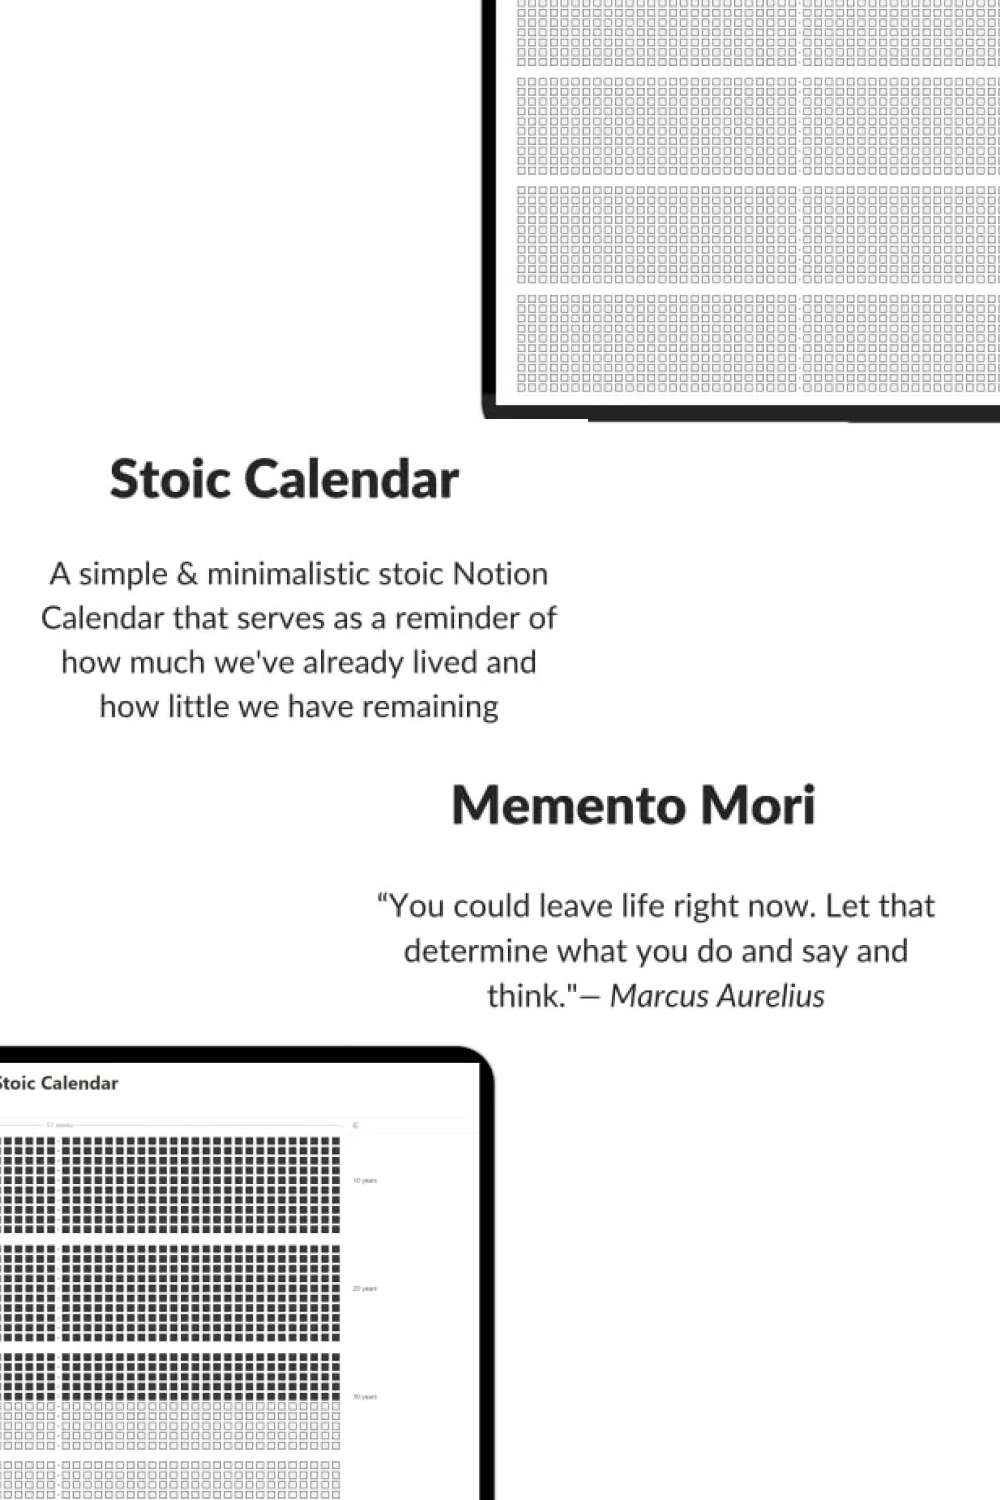 Memento mori stoic calendar.